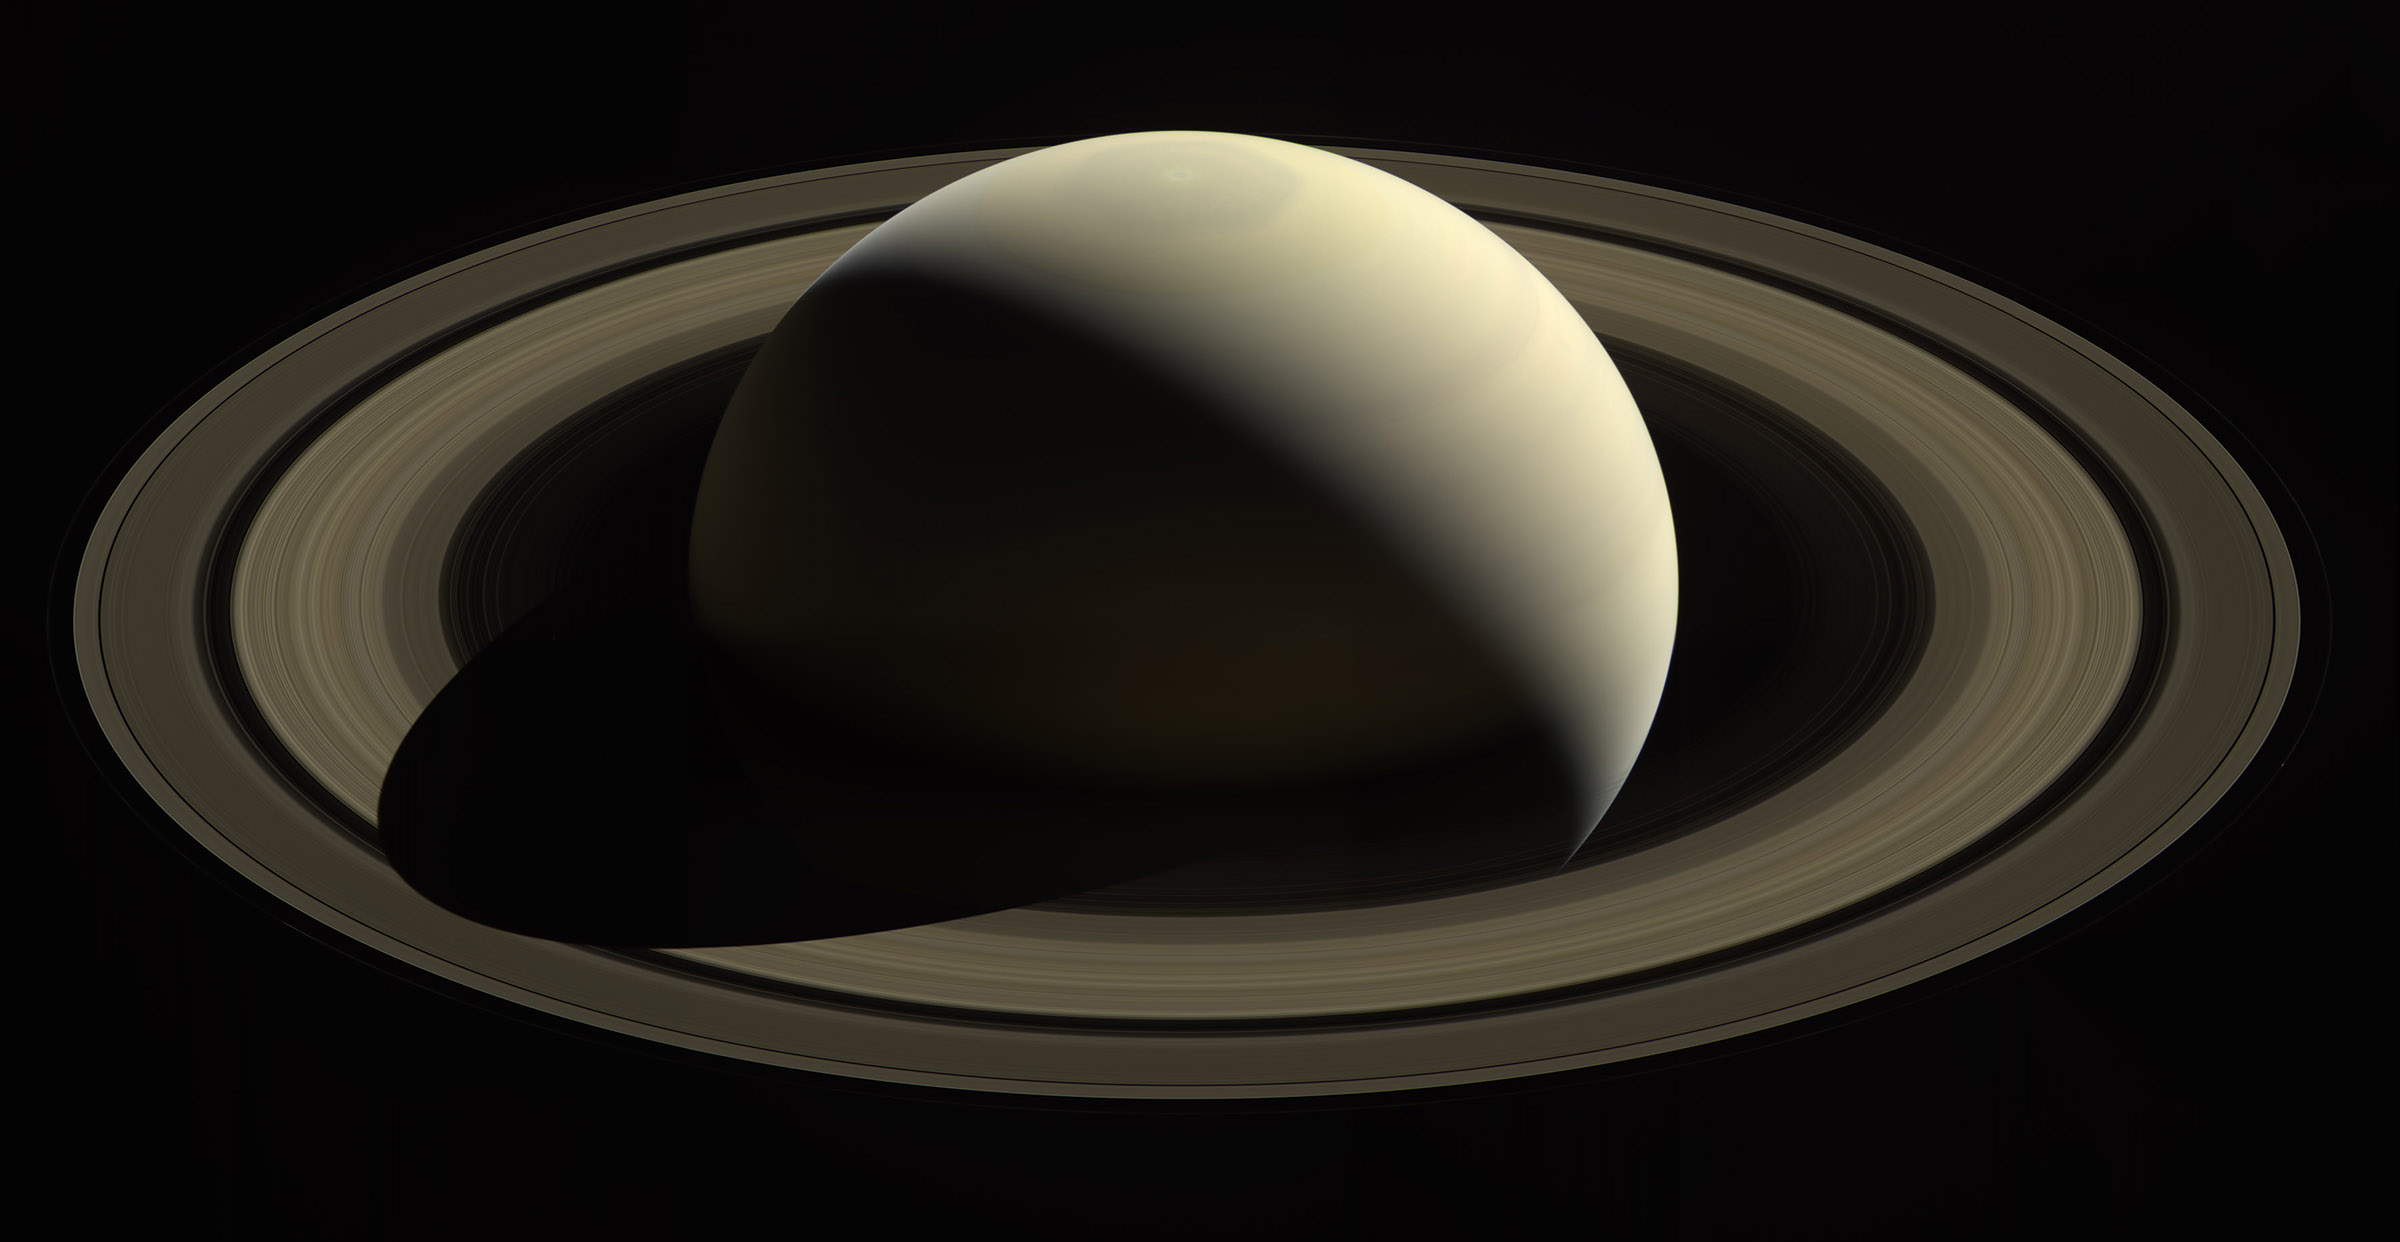 PHOTOS: Cassini’s last views of Saturn